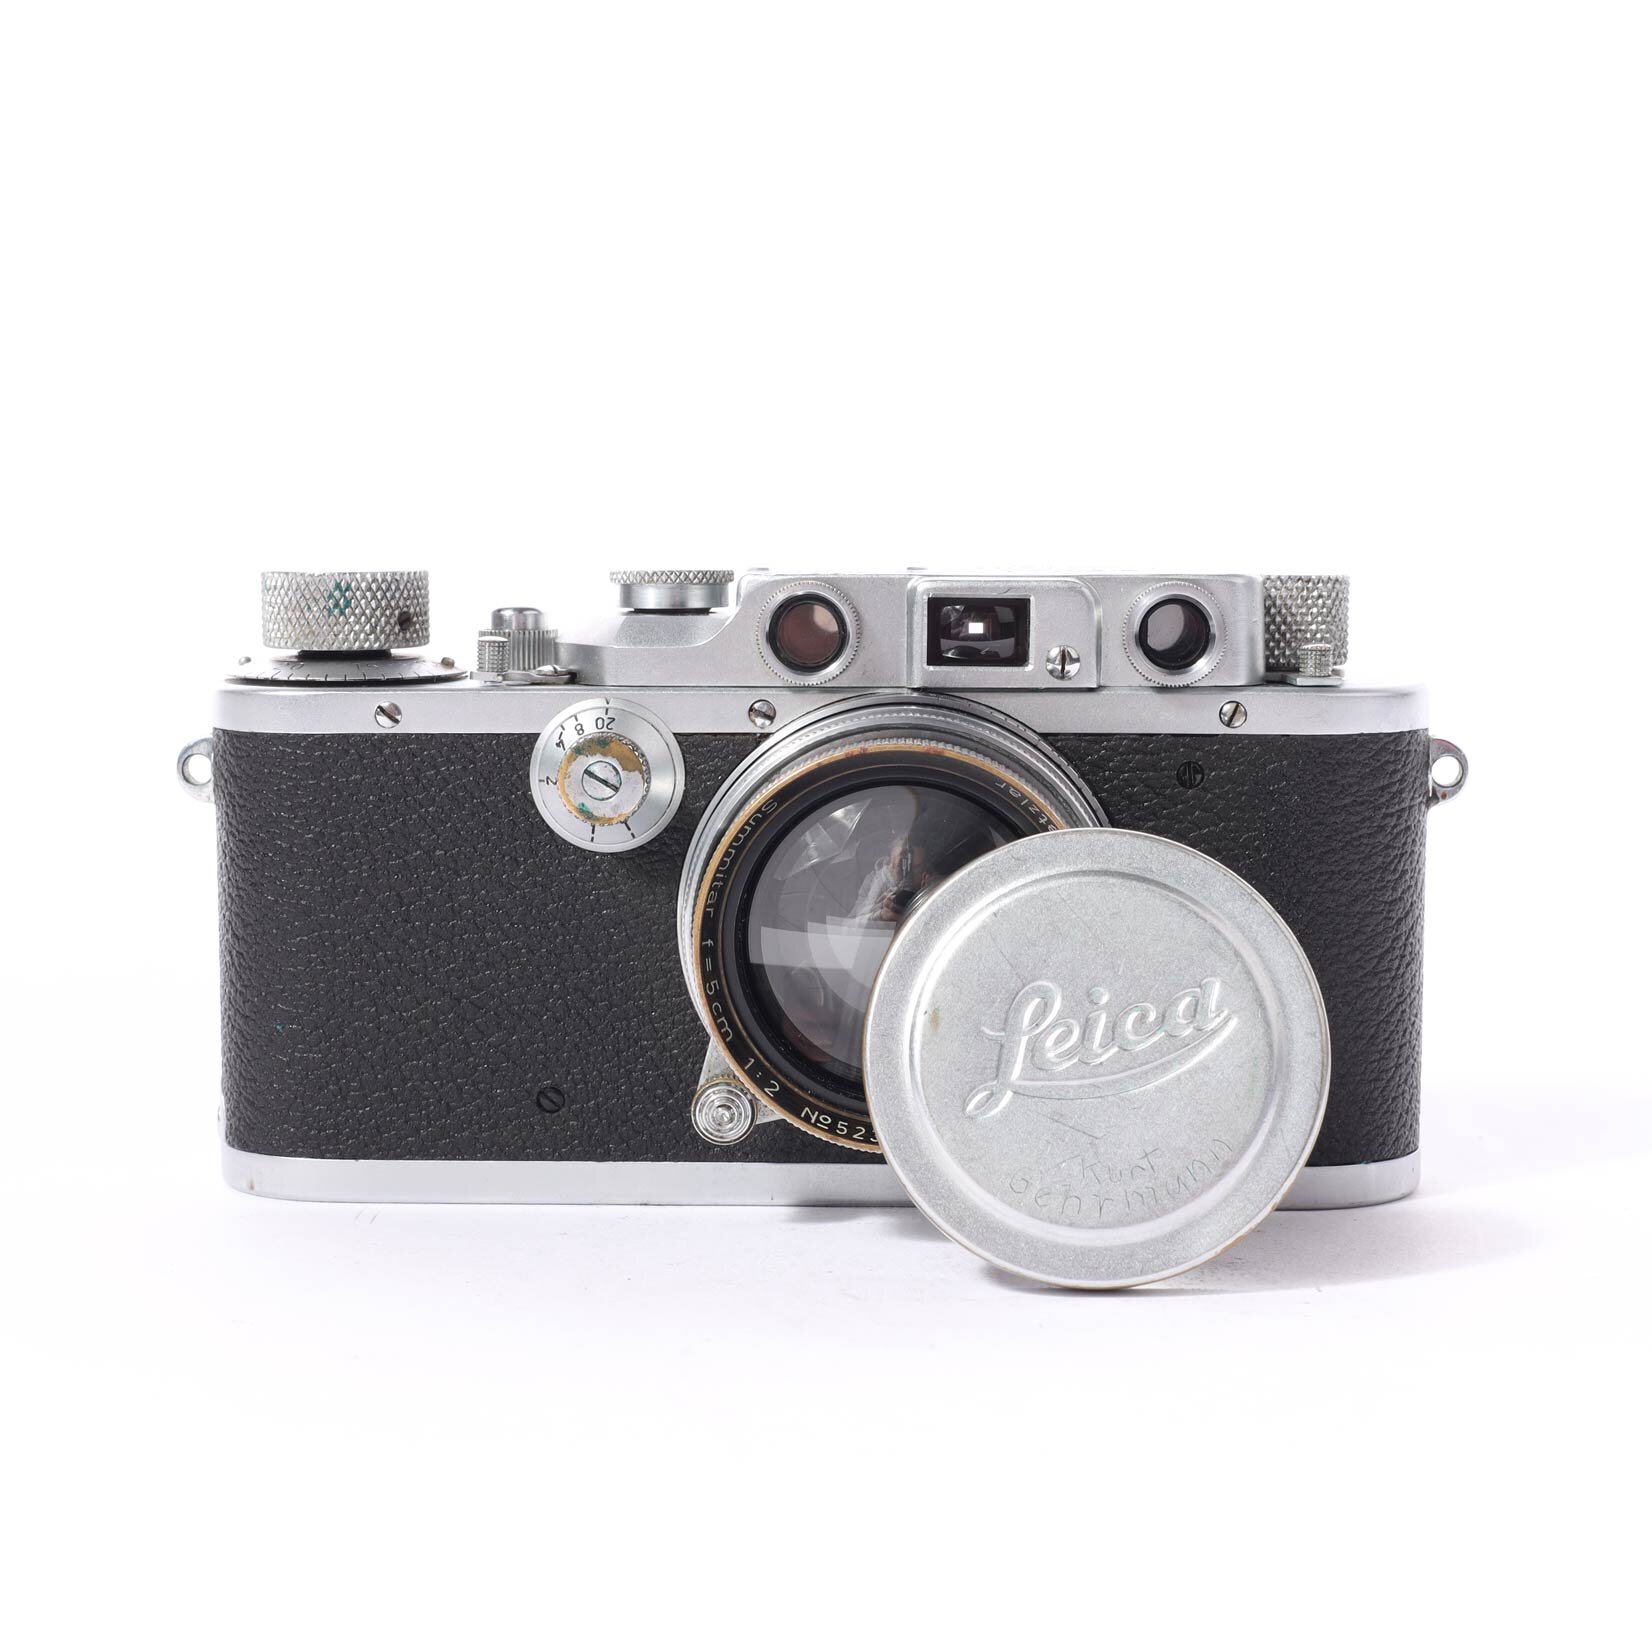 Leitz Leica 3 IIIC Summitar 5cm/2